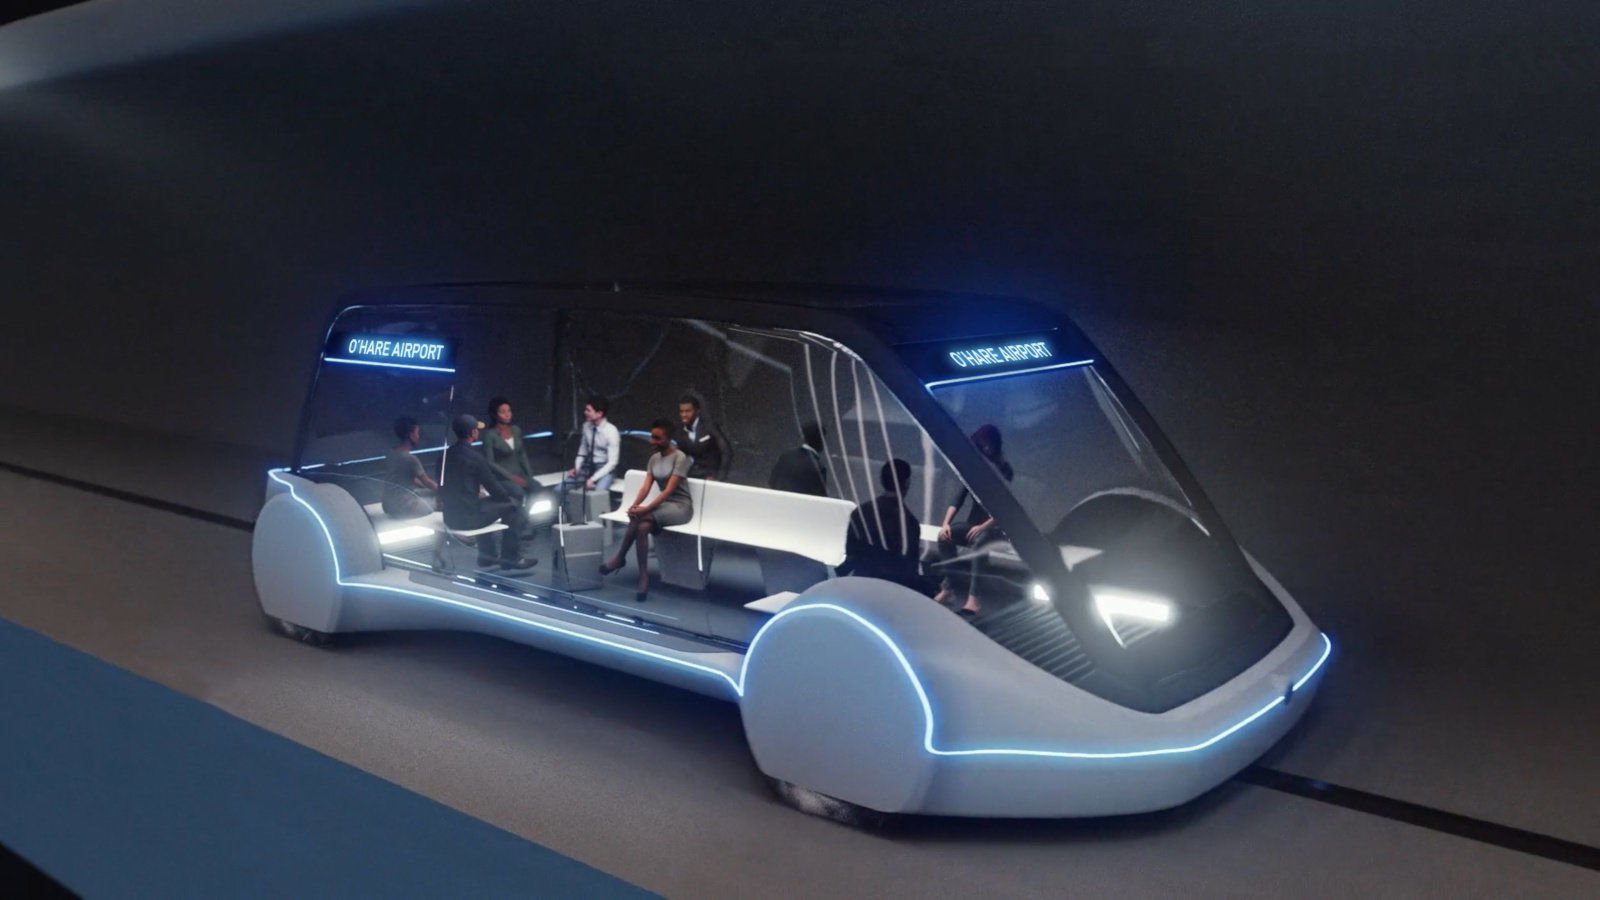 Kjedelig Selskapet vil åpne en tunnel med Autonome kjøretøy 18 Dec